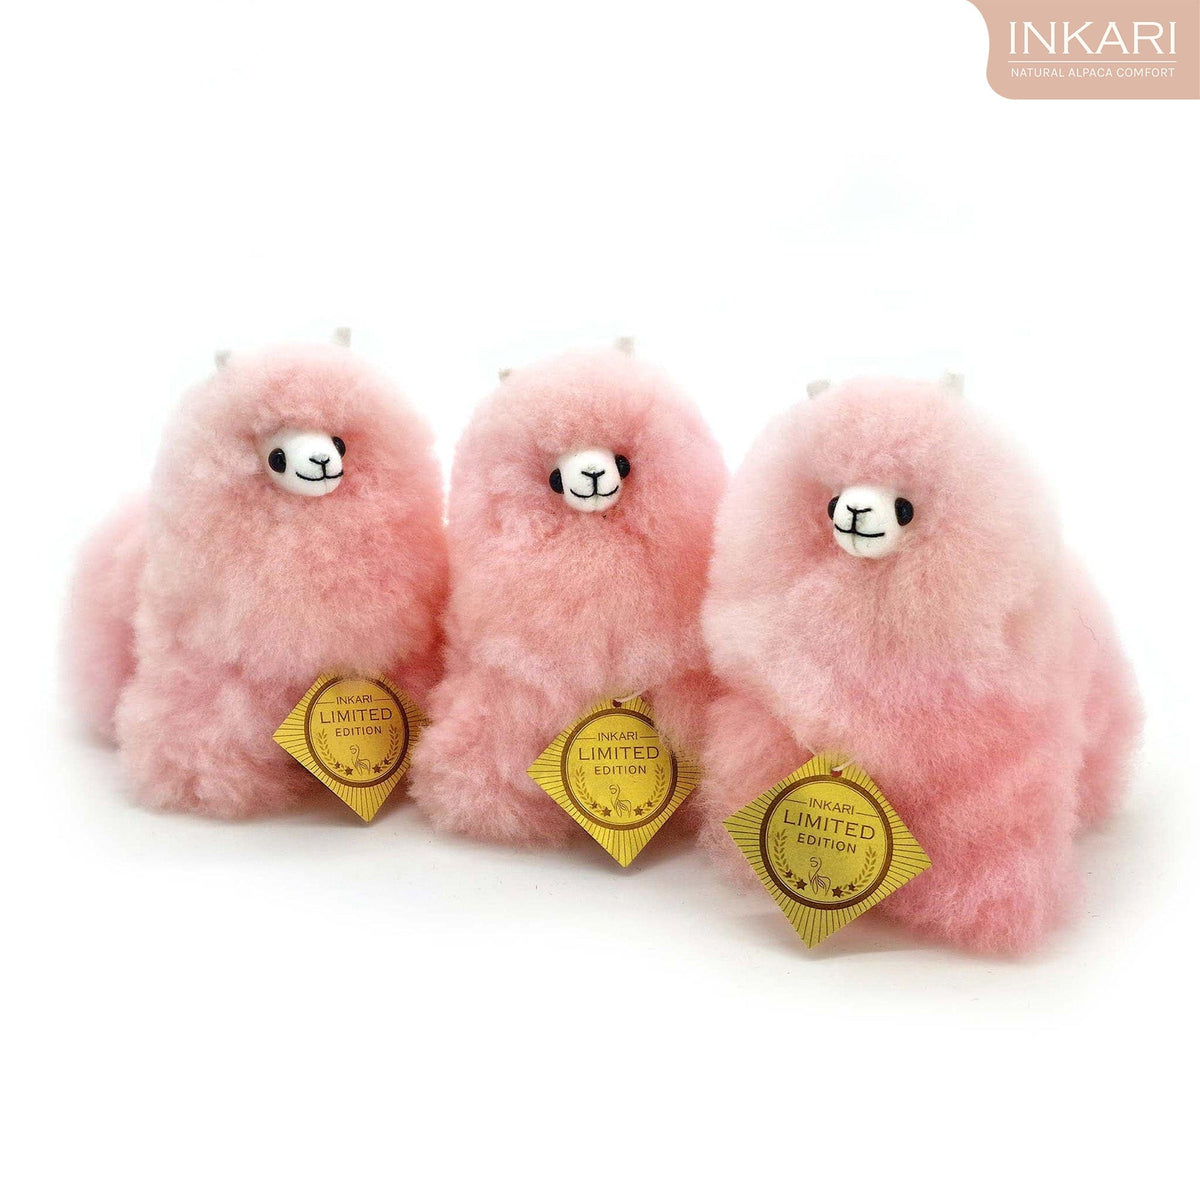 Zucchero filato - Mini giocattolo alpaca (15 cm) - Edizione limitata